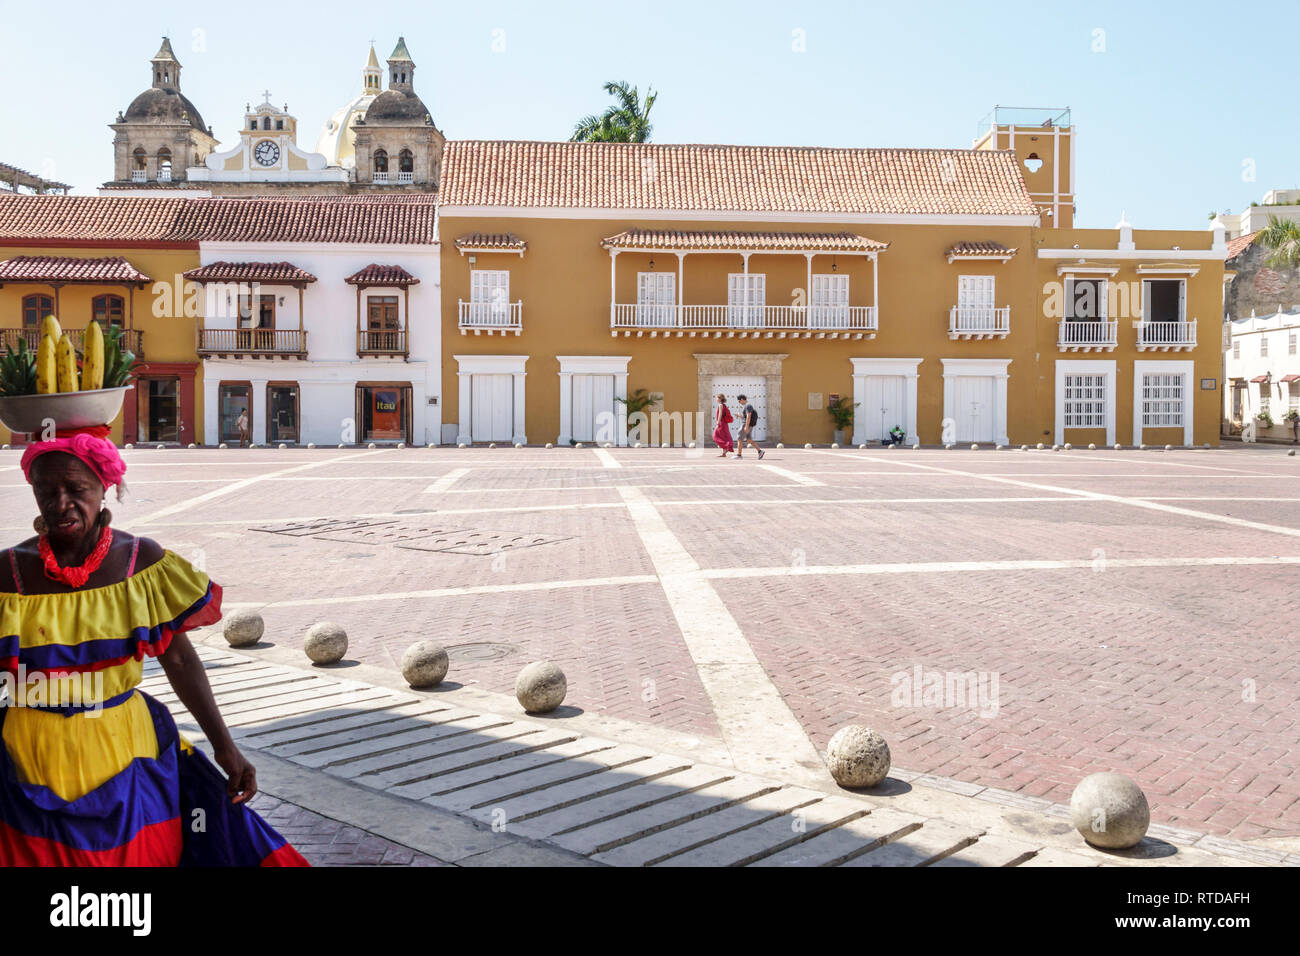 Cartagena Colombia,Plaza de la Aduana,piazza pubblica,Palenquera Black African Caribbean,donna femminile,venditore di frutta,costume tradizionale,herit culturale Foto Stock